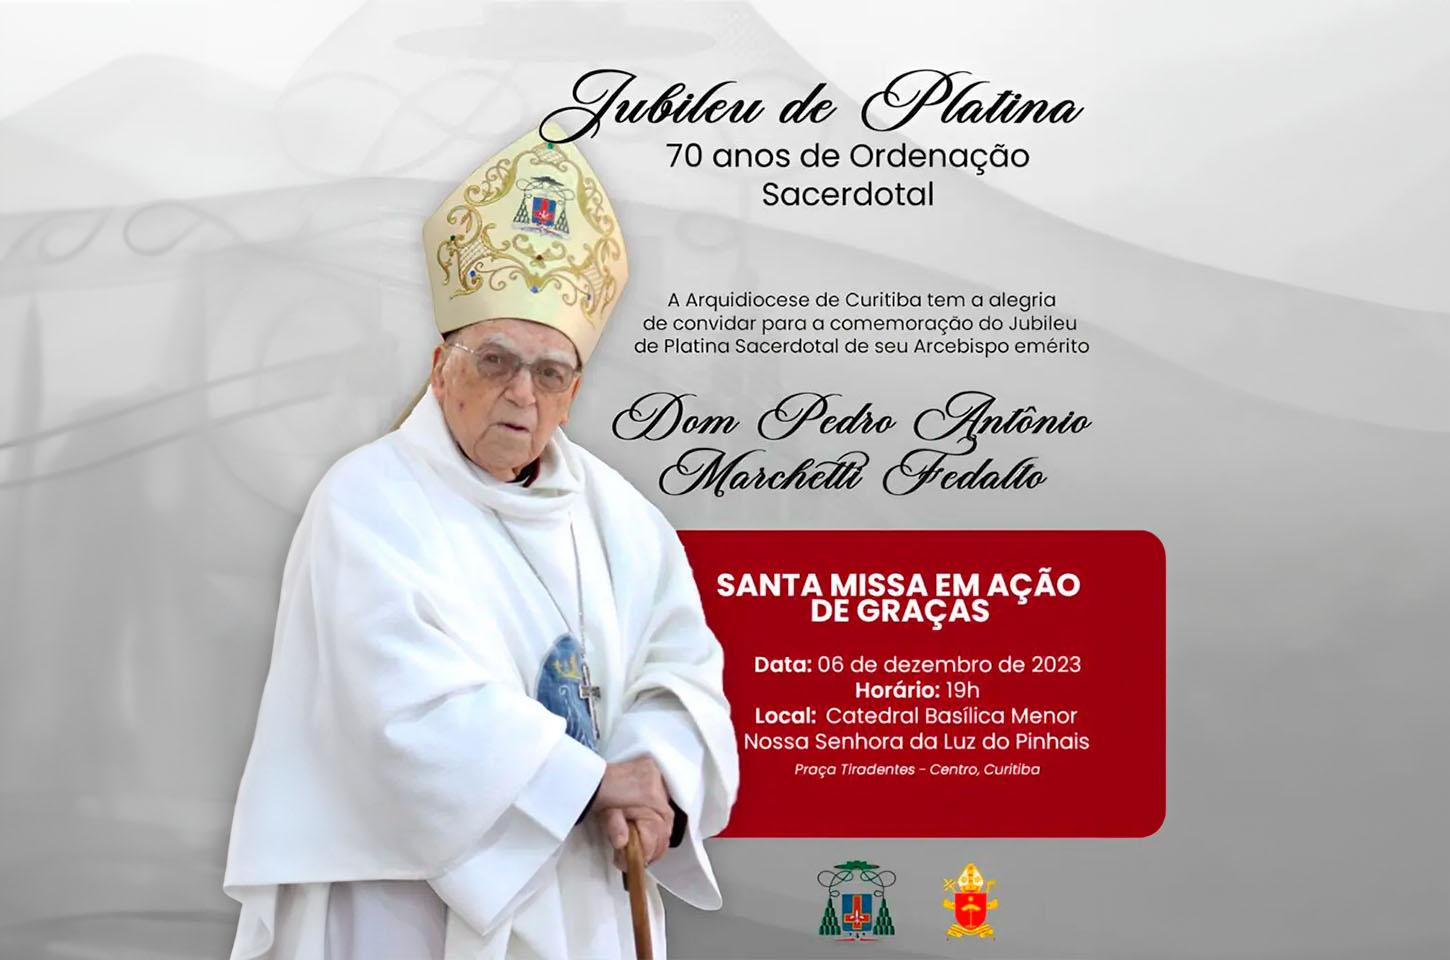 O Campolarguense Dom Pedro Fedalto, Arcebispo Emérito de Curitiba, celebra 70 anos de sacerdócio